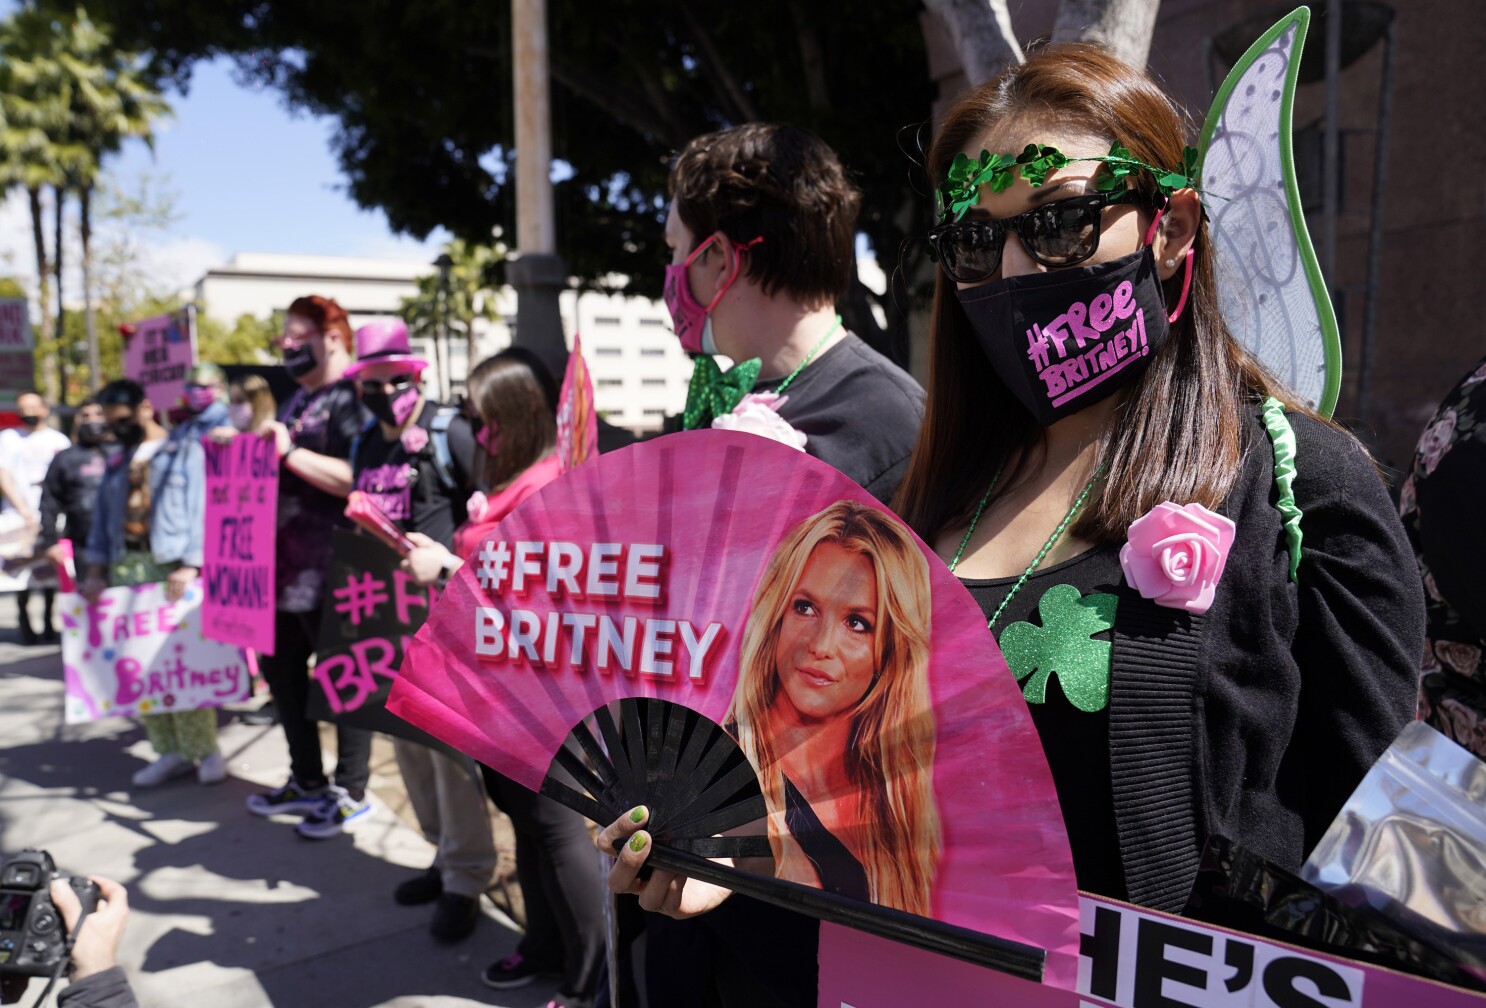 El caso de Britney Spears paso a paso. #FreeBritney y curaduría de la corte  - Los Angeles Times